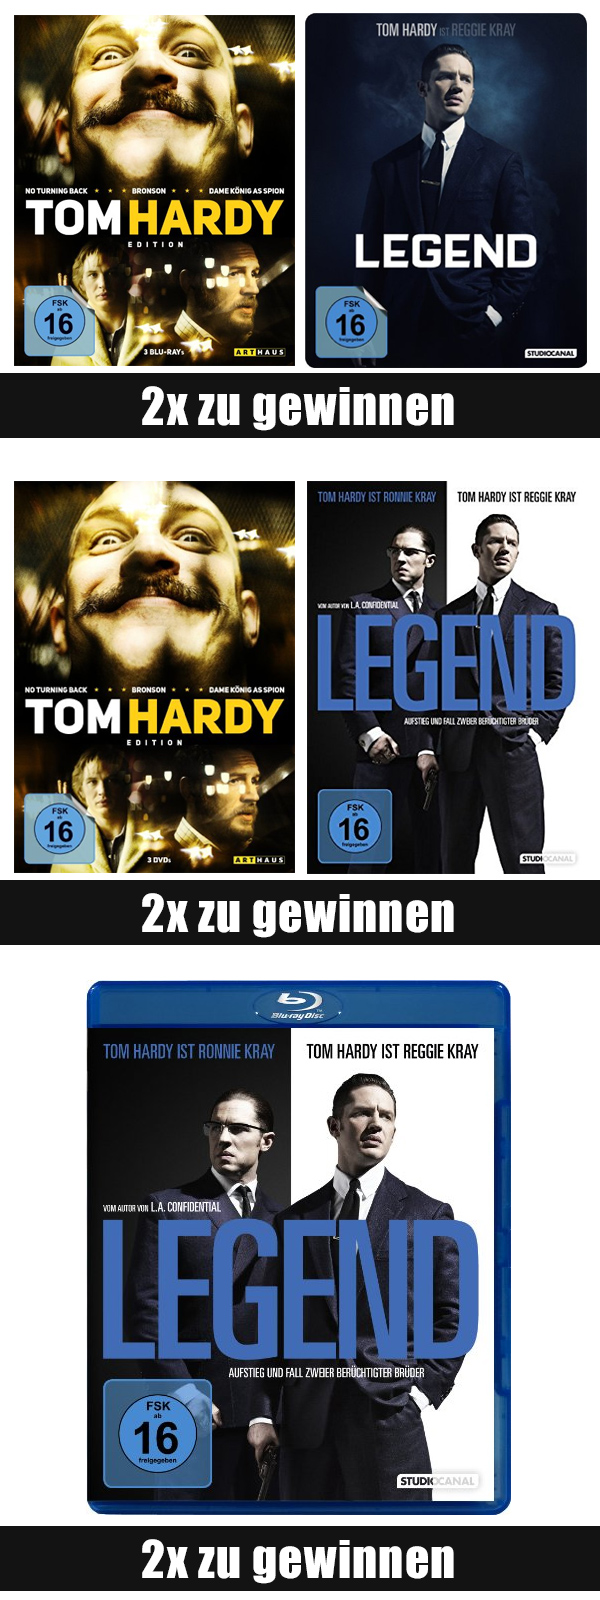 Bild 1:Tom Hardy-Fans aufgepasst! 6x "Legend" und "Tom Hardy Edition" gewinnen!